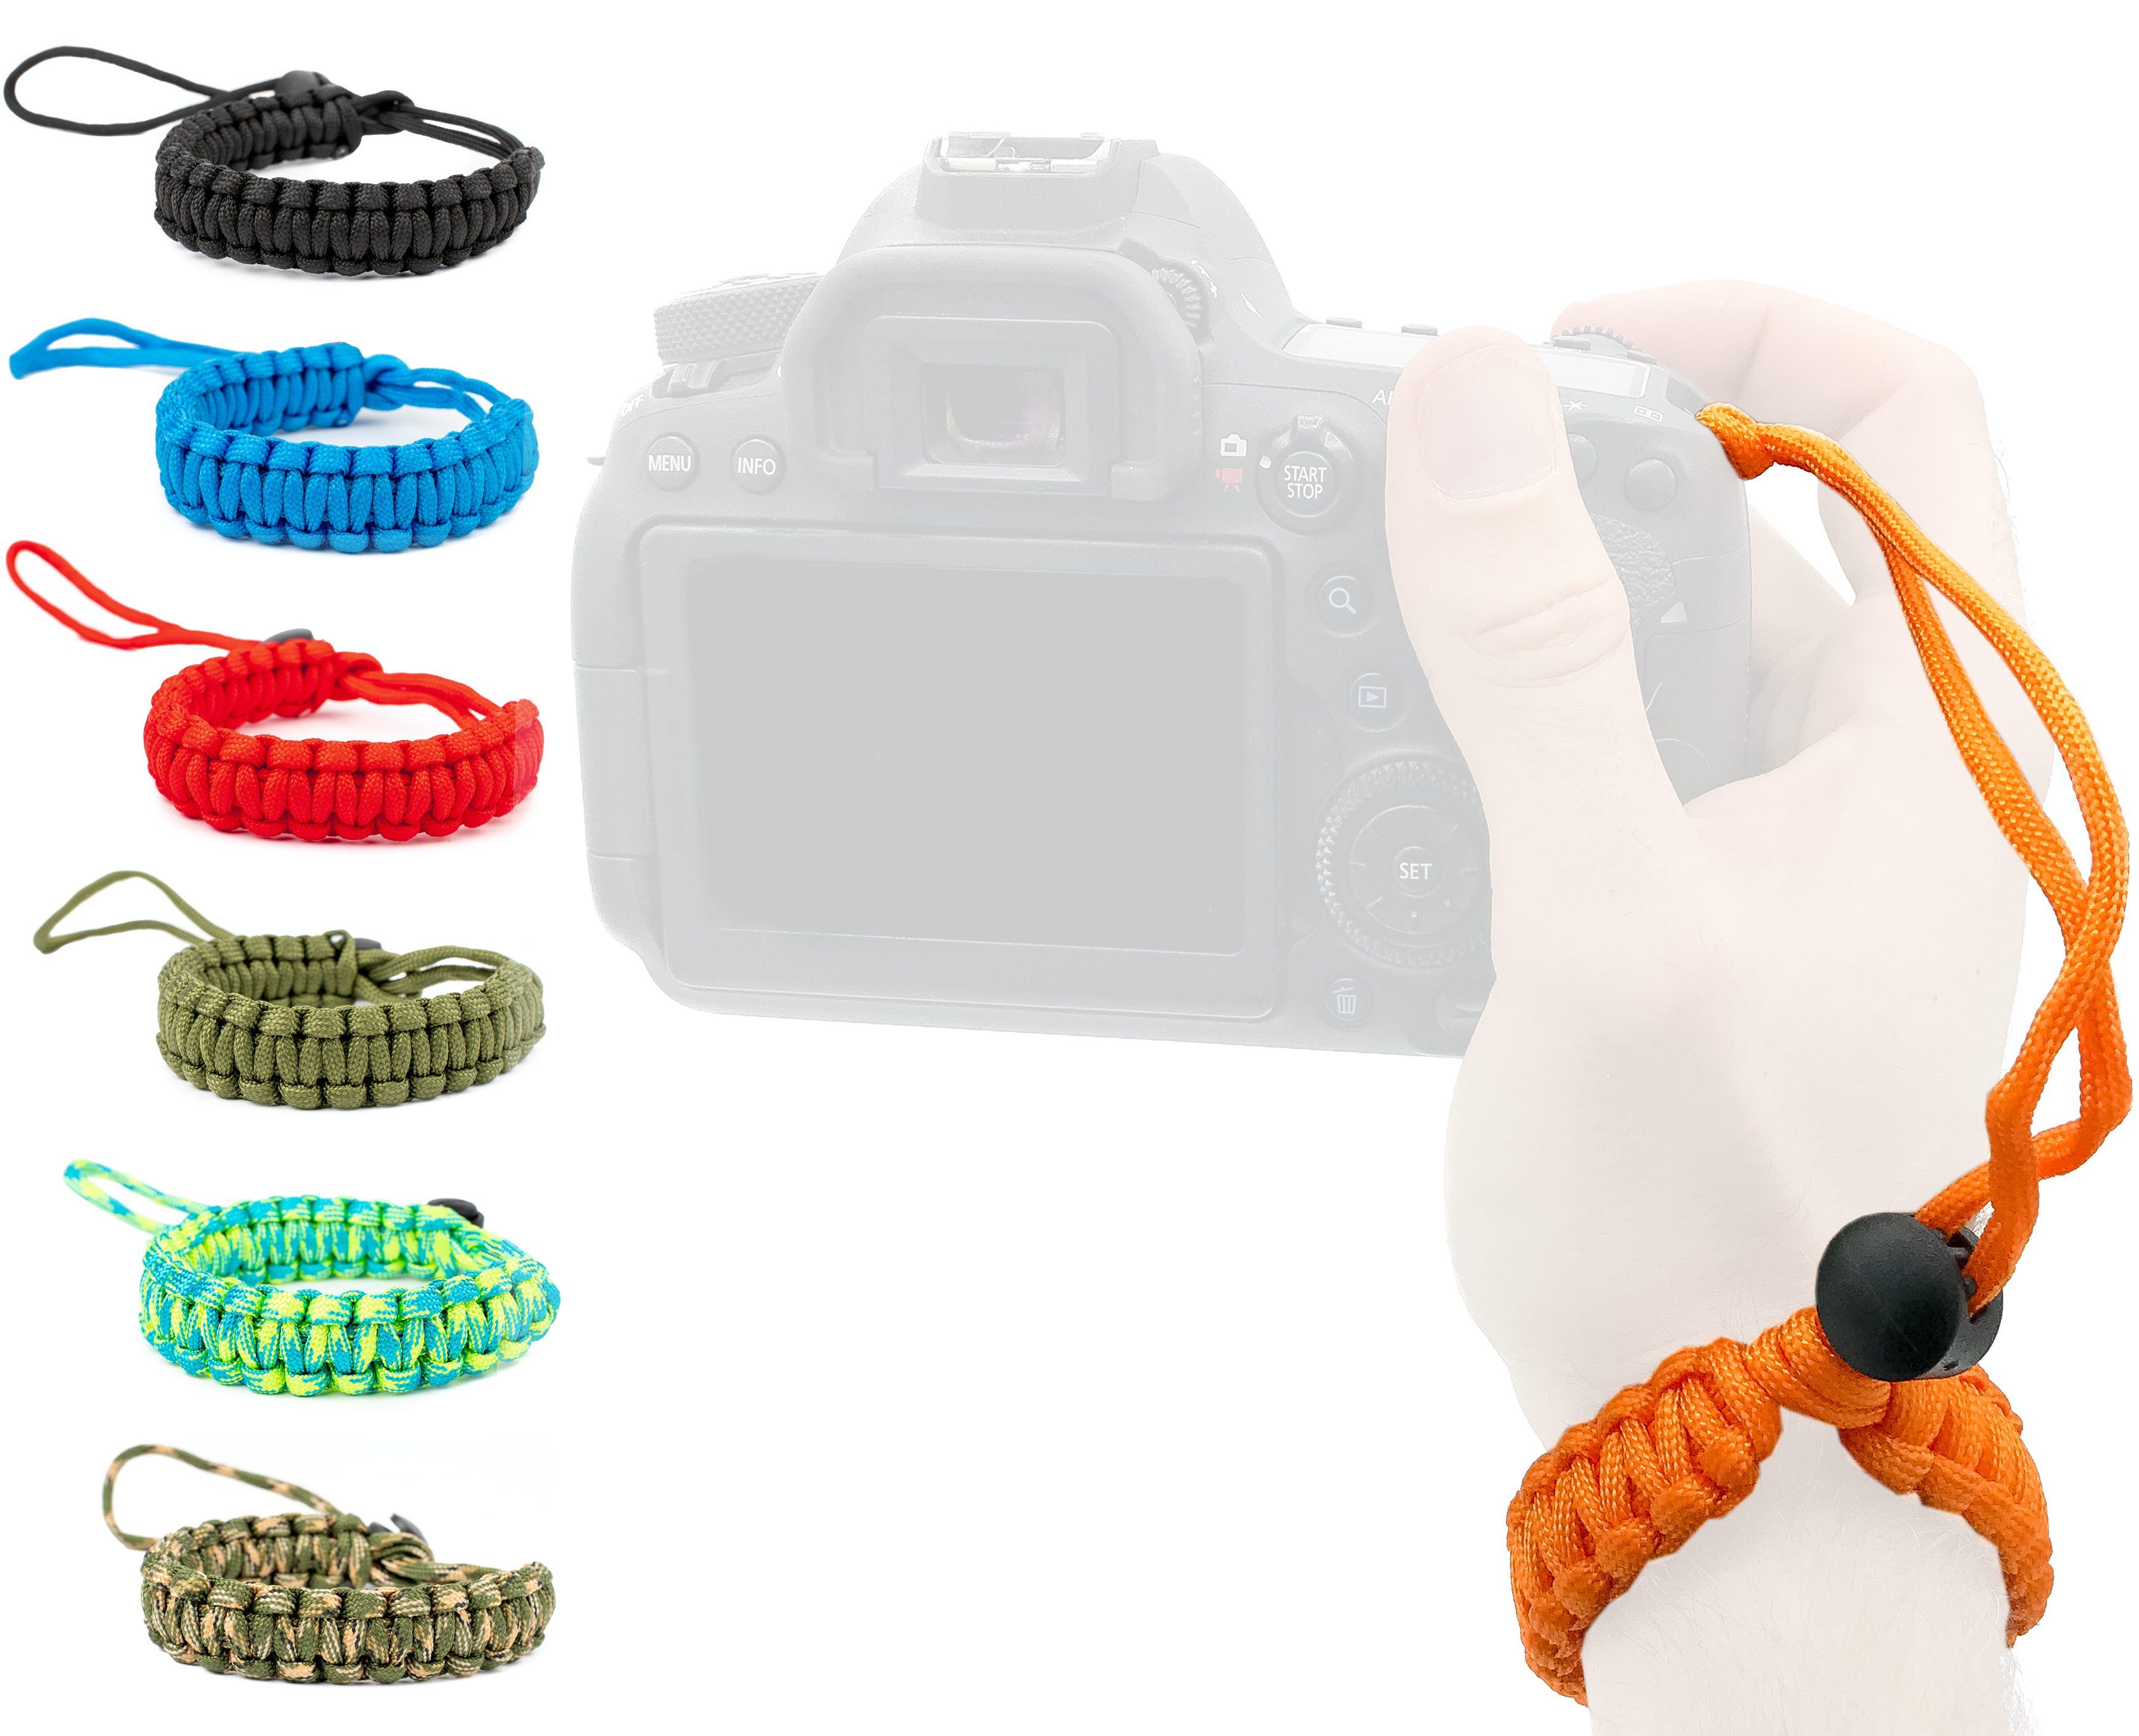 Lens-Aid Kamerazubehör-Set Handschlaufe für Kamera: Paracord Kordel Wrist-Band Kameragurt zum Tragen am Handgelenk DSLR Tragegurt.